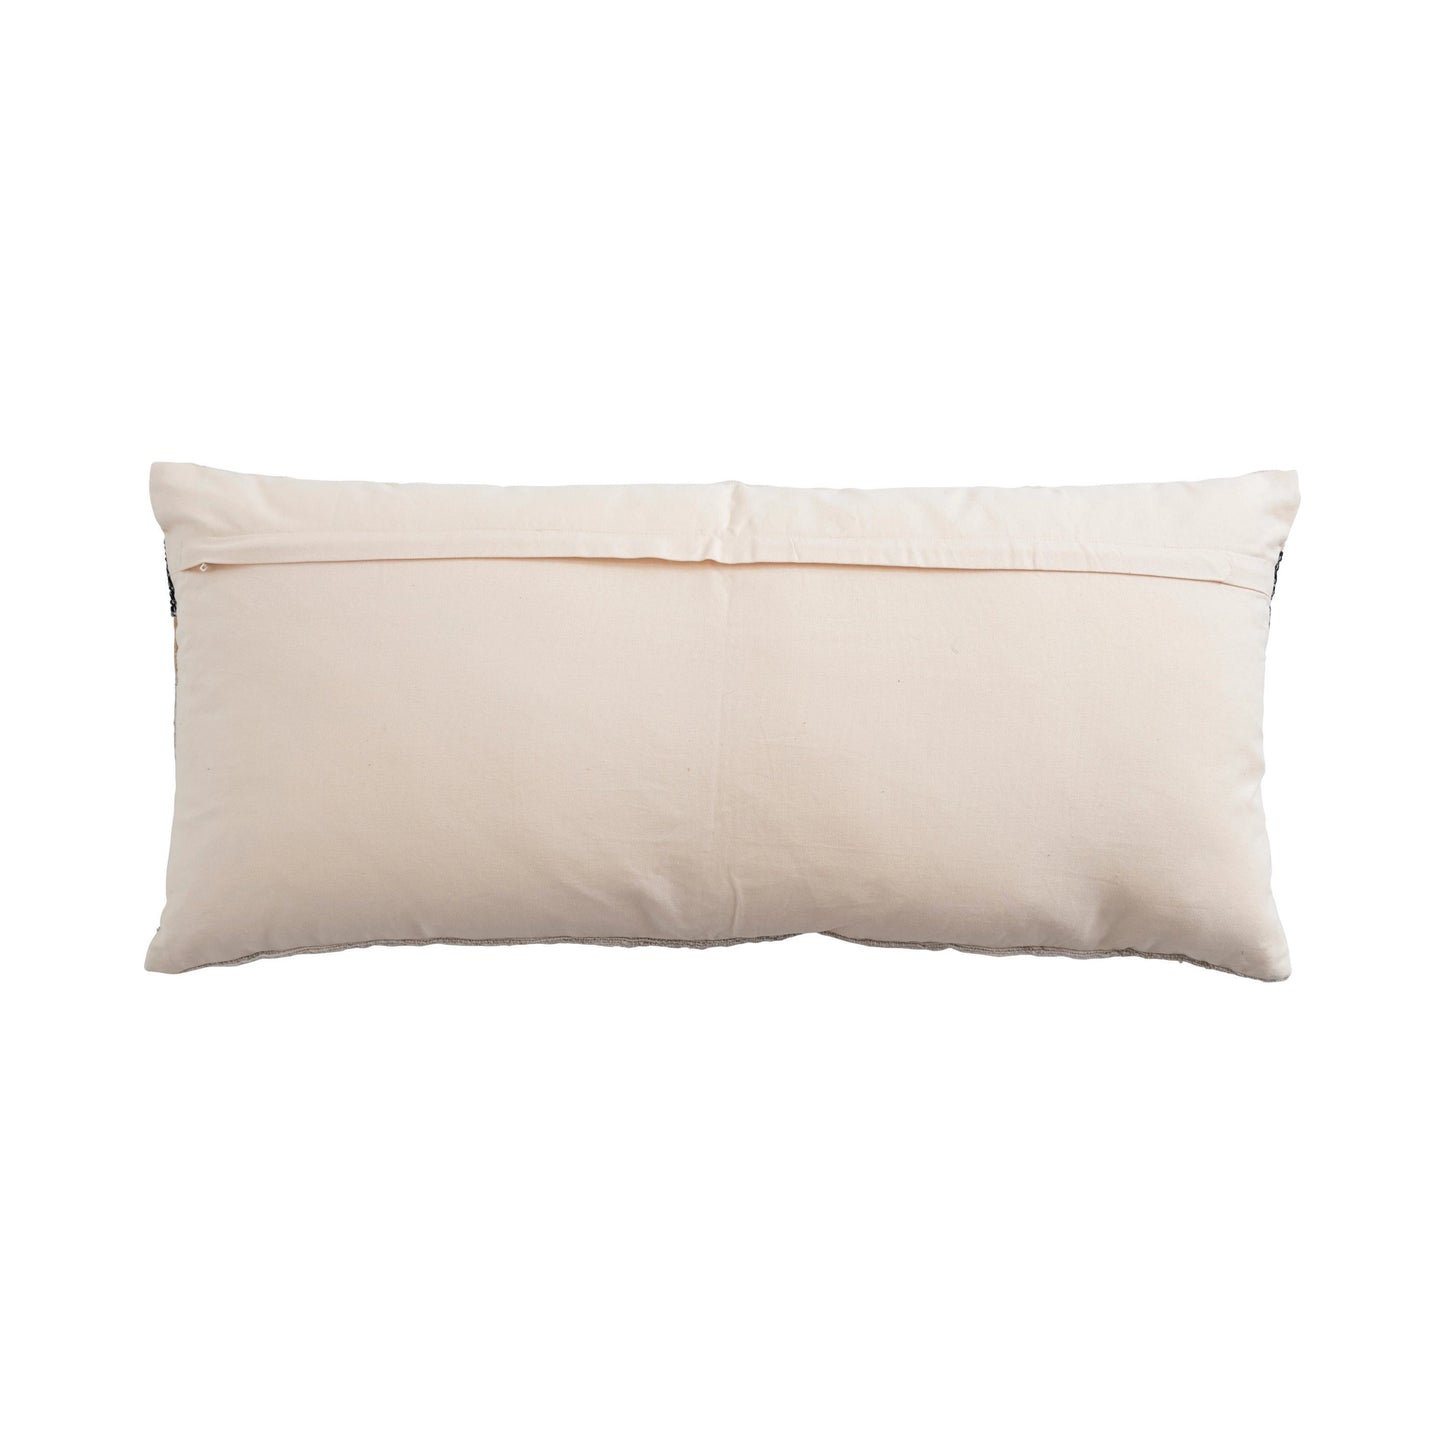 Woven Wool Blend Lumbar Pillow with Gold Metallic Thread & Stripes